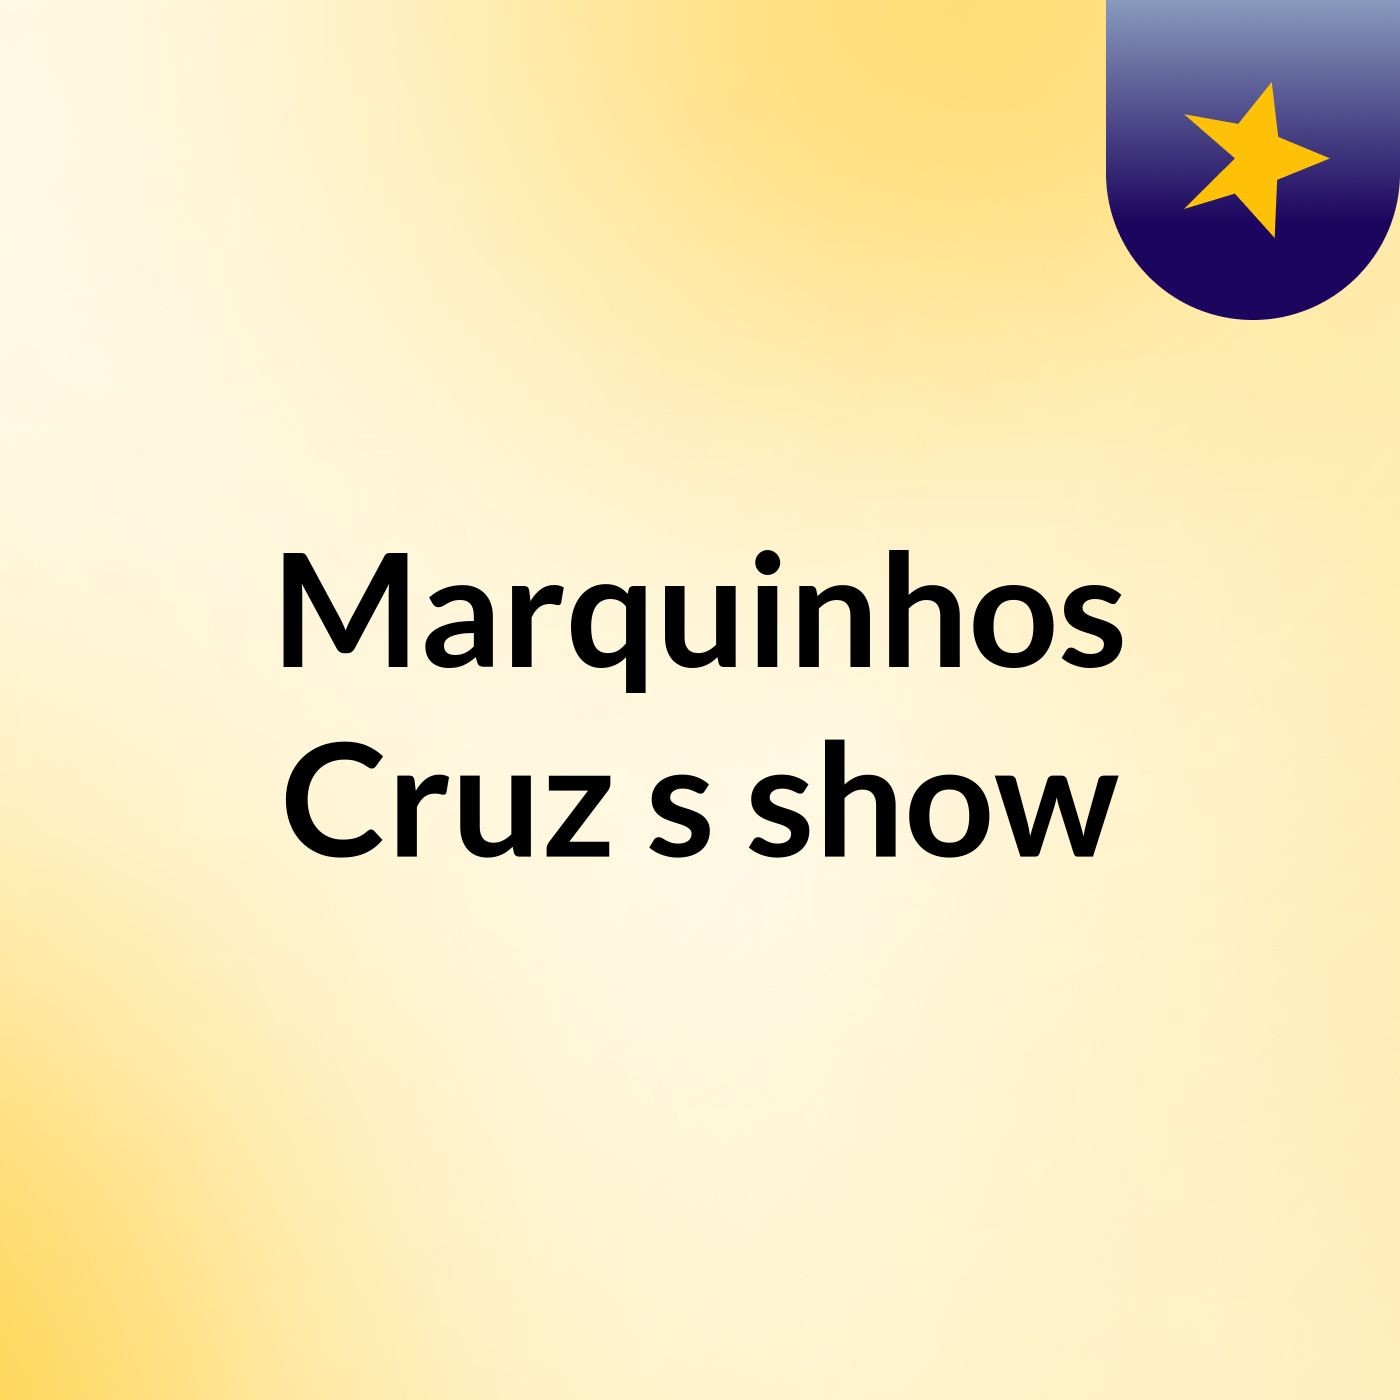 Marquinhos Cruz's show